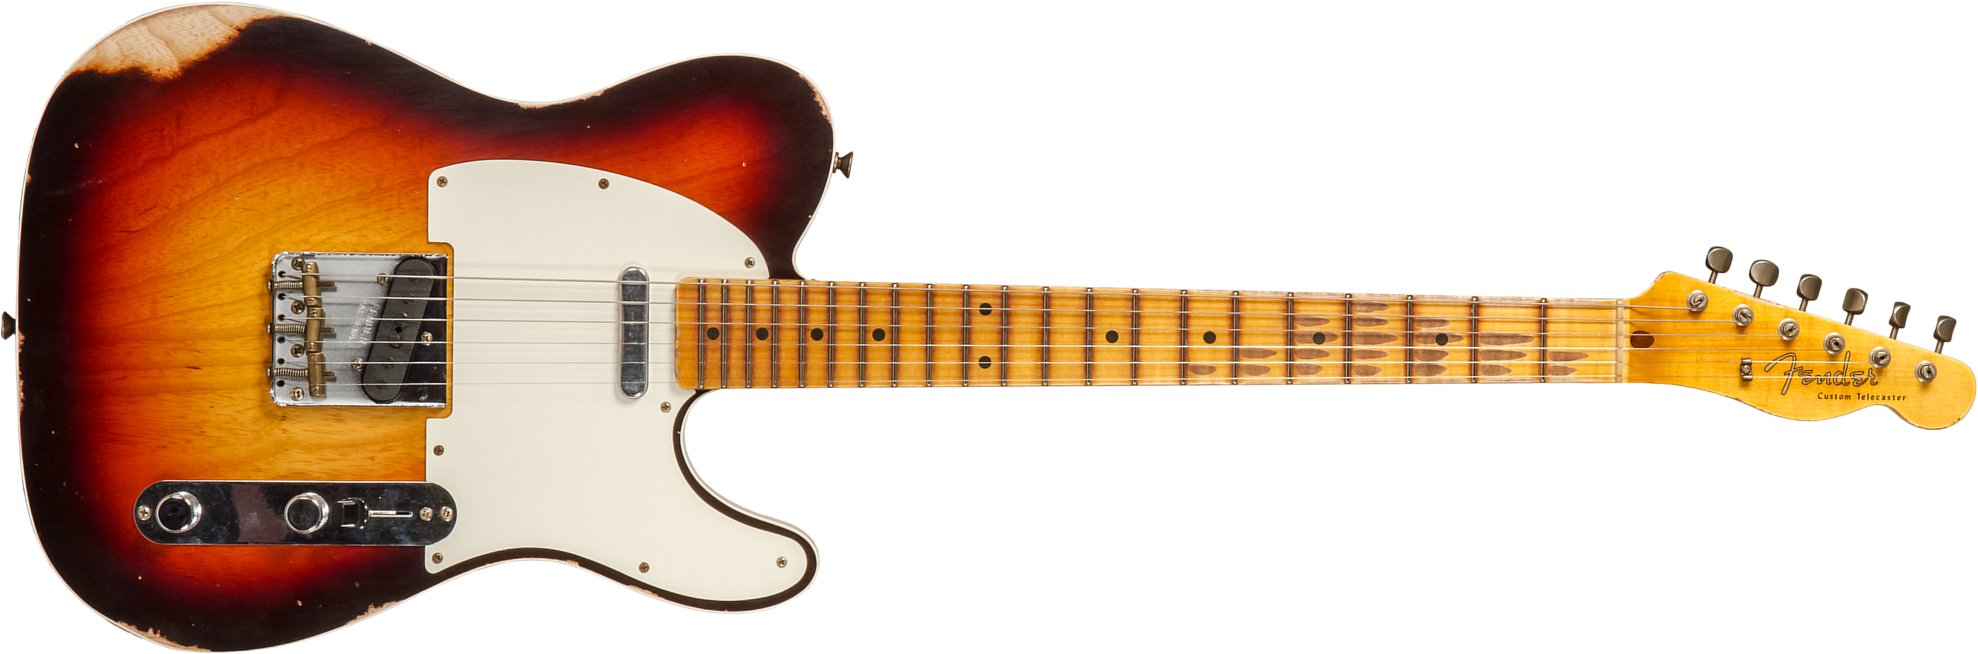 Fender Custom Shop Tele Custom 1959 2s Ht Mn #cz573750 - Relic Chocolate 3-color Sunburst - Guitare Électrique Forme Tel - Main picture